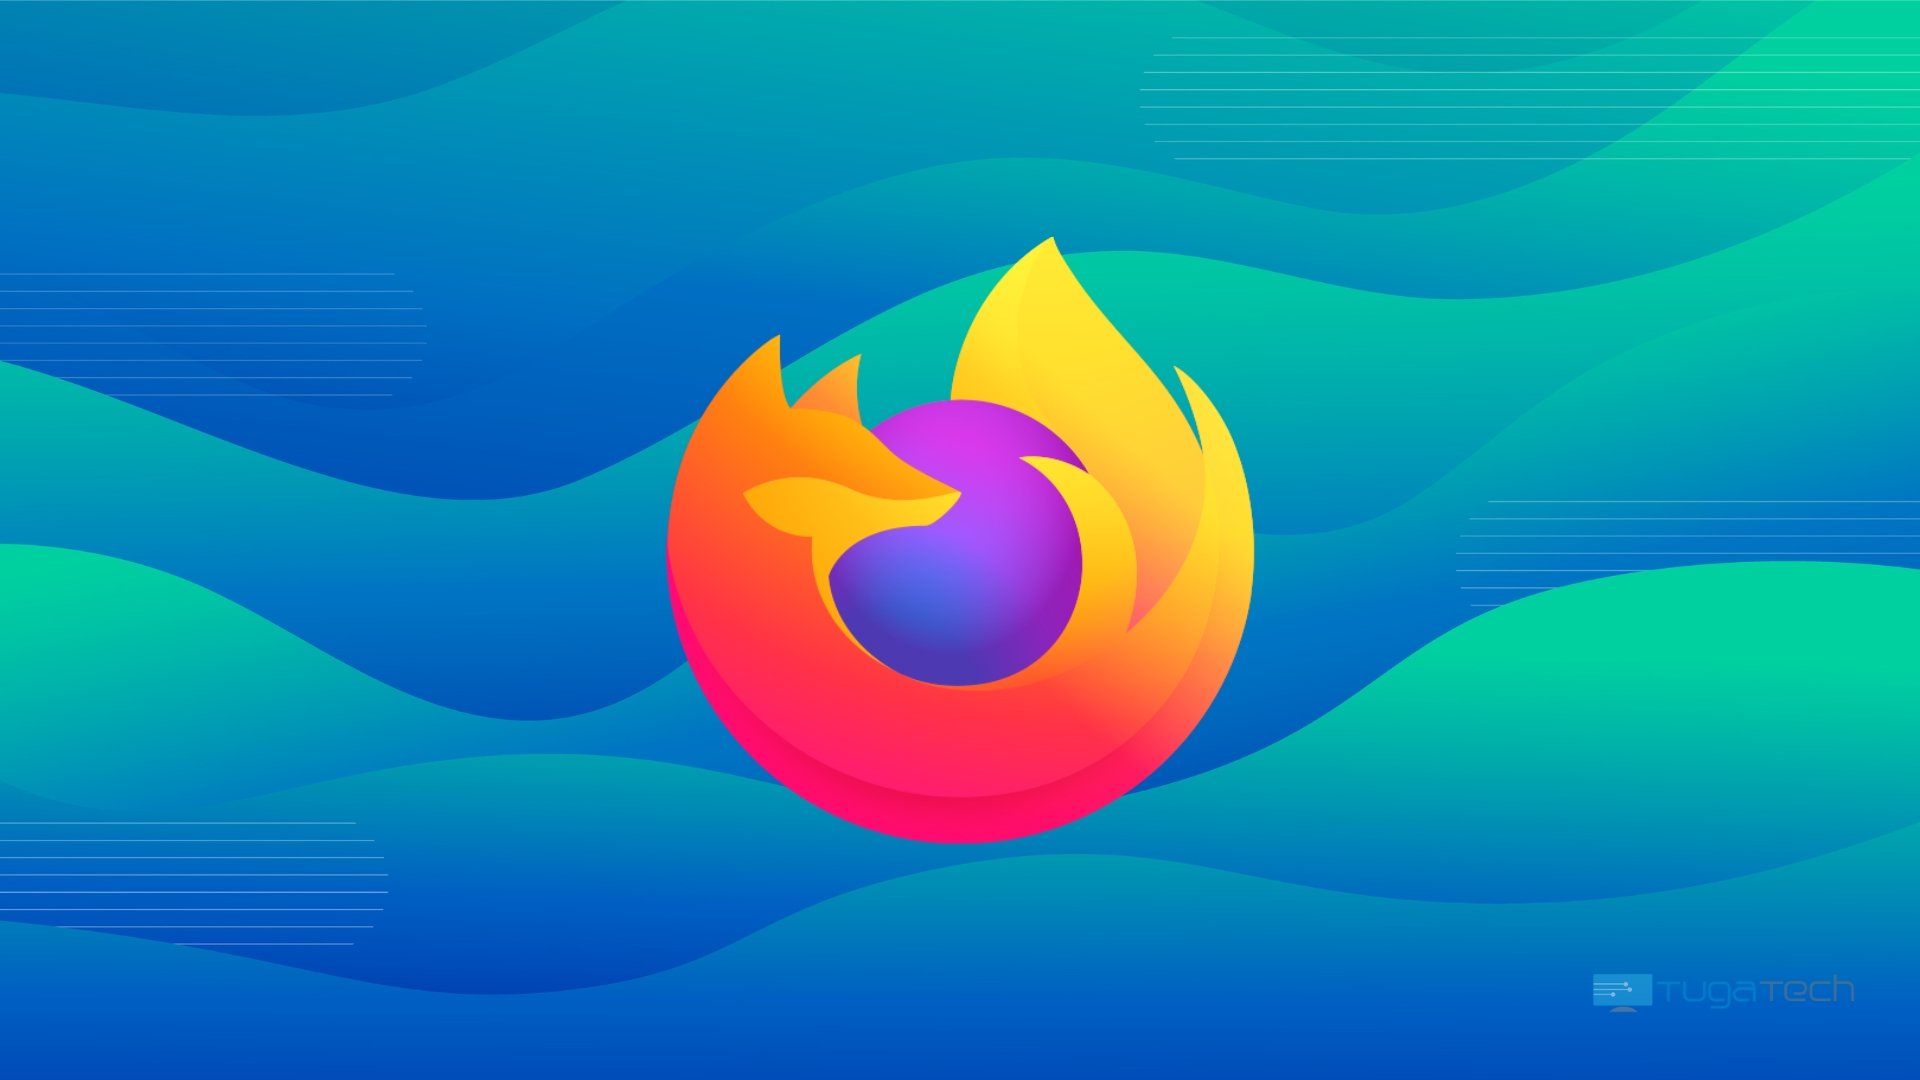 Firefox 111